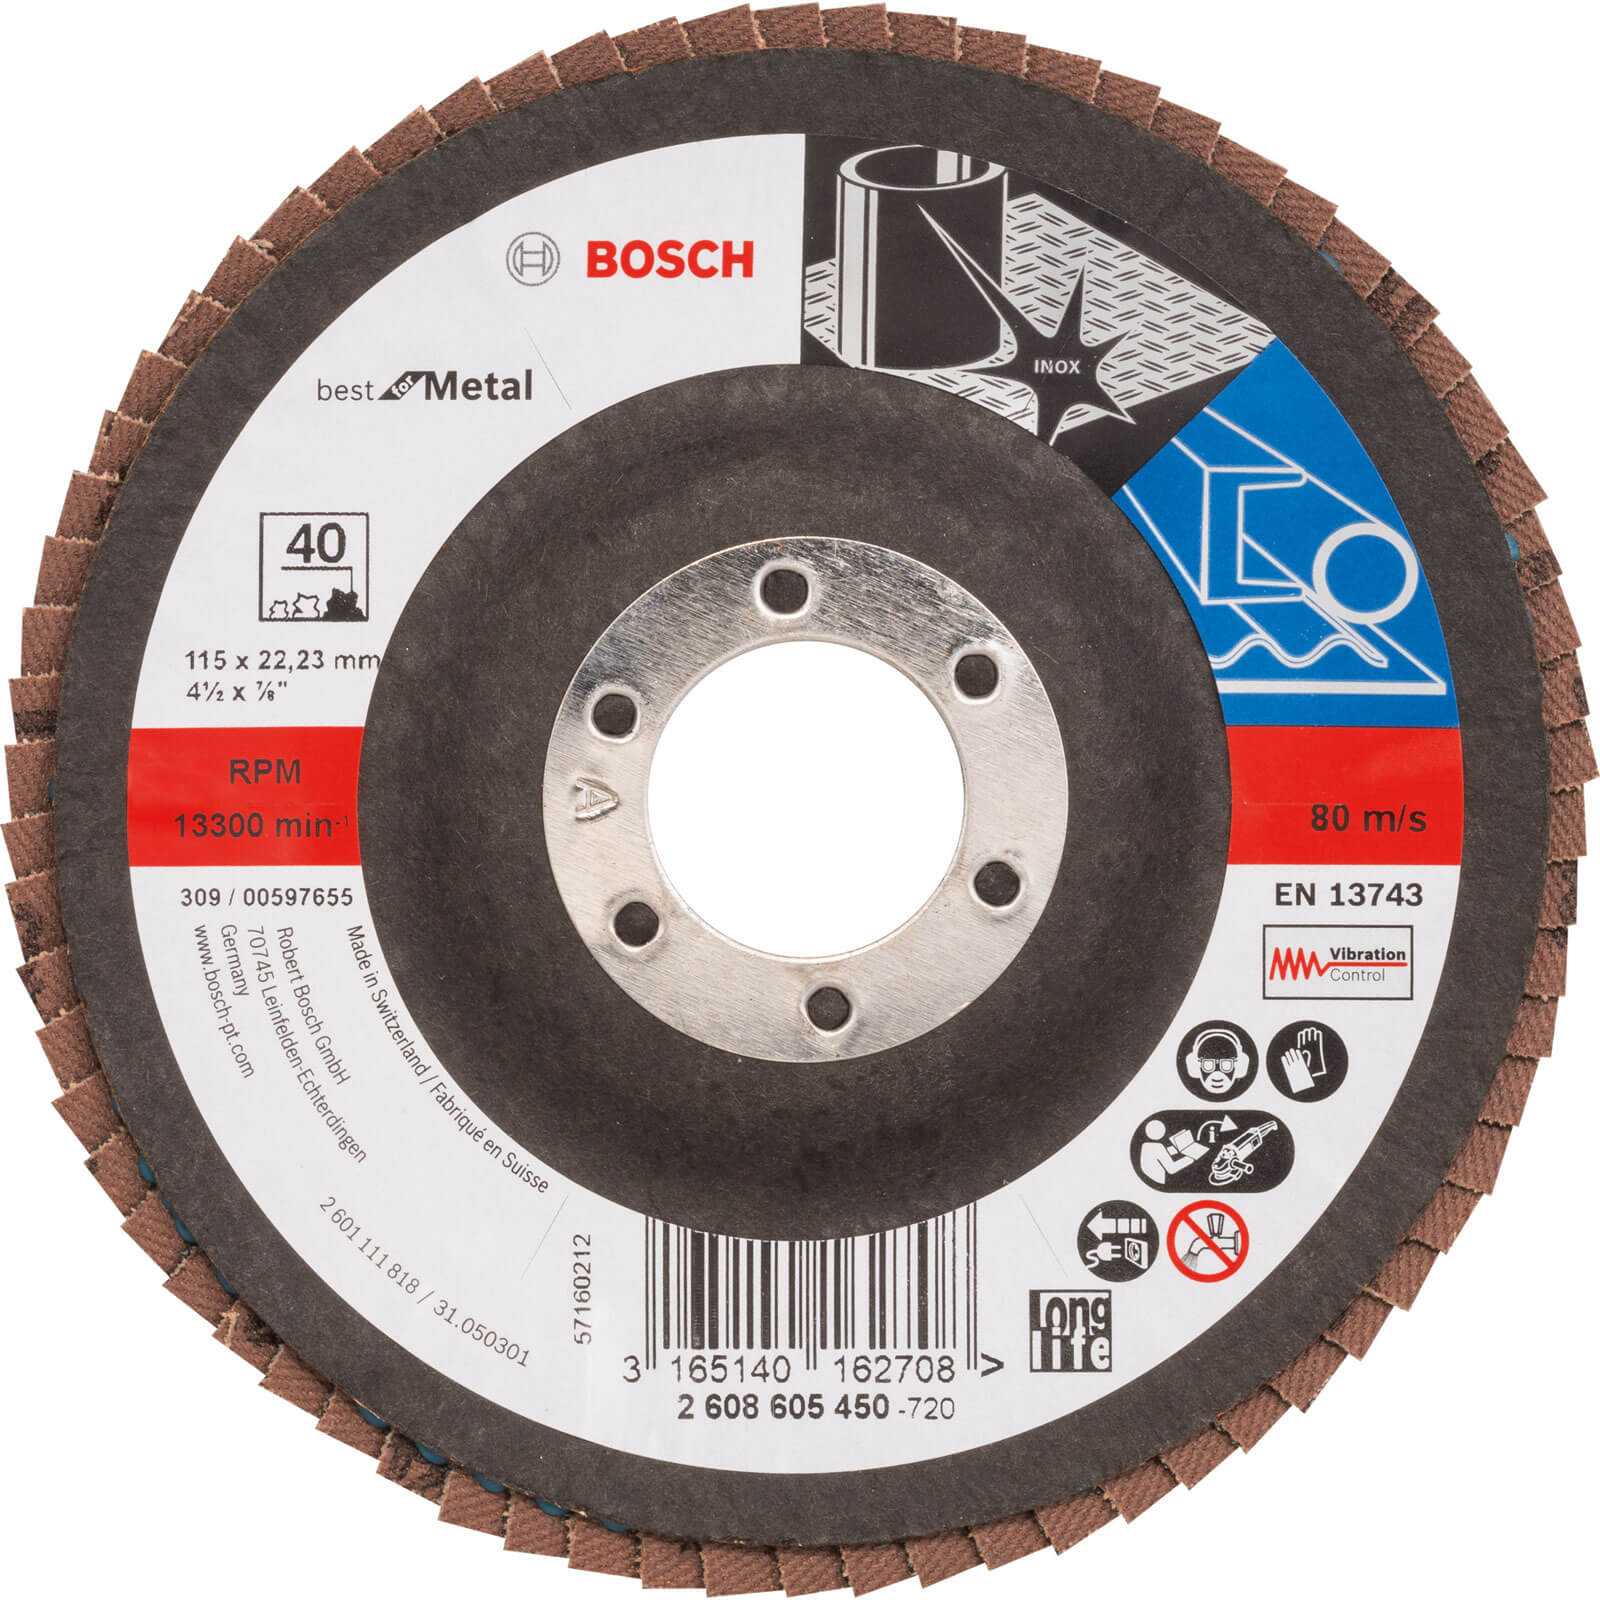 Photos - Cutting Disc Bosch Zirconium Abrasive Flap Disc 115mm 40g 